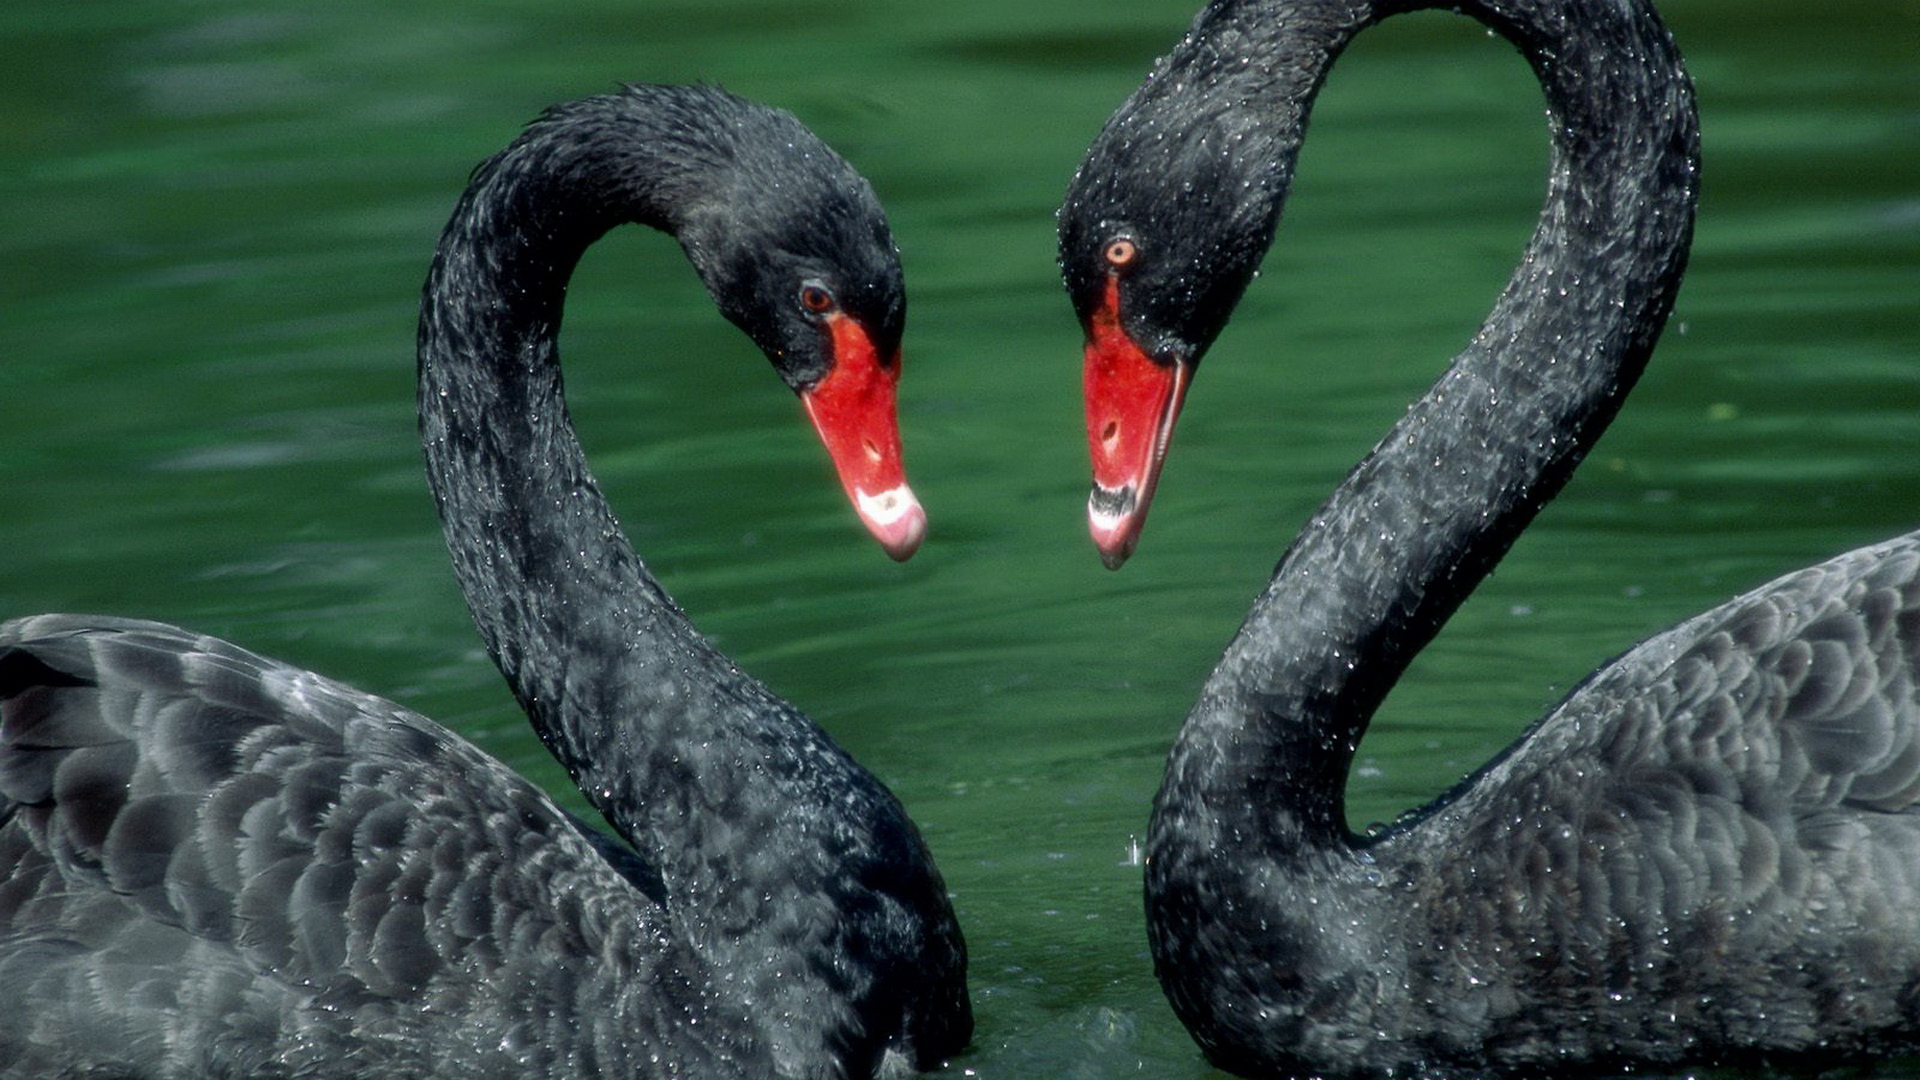 Free download wallpaper Animal, Black Swan on your PC desktop